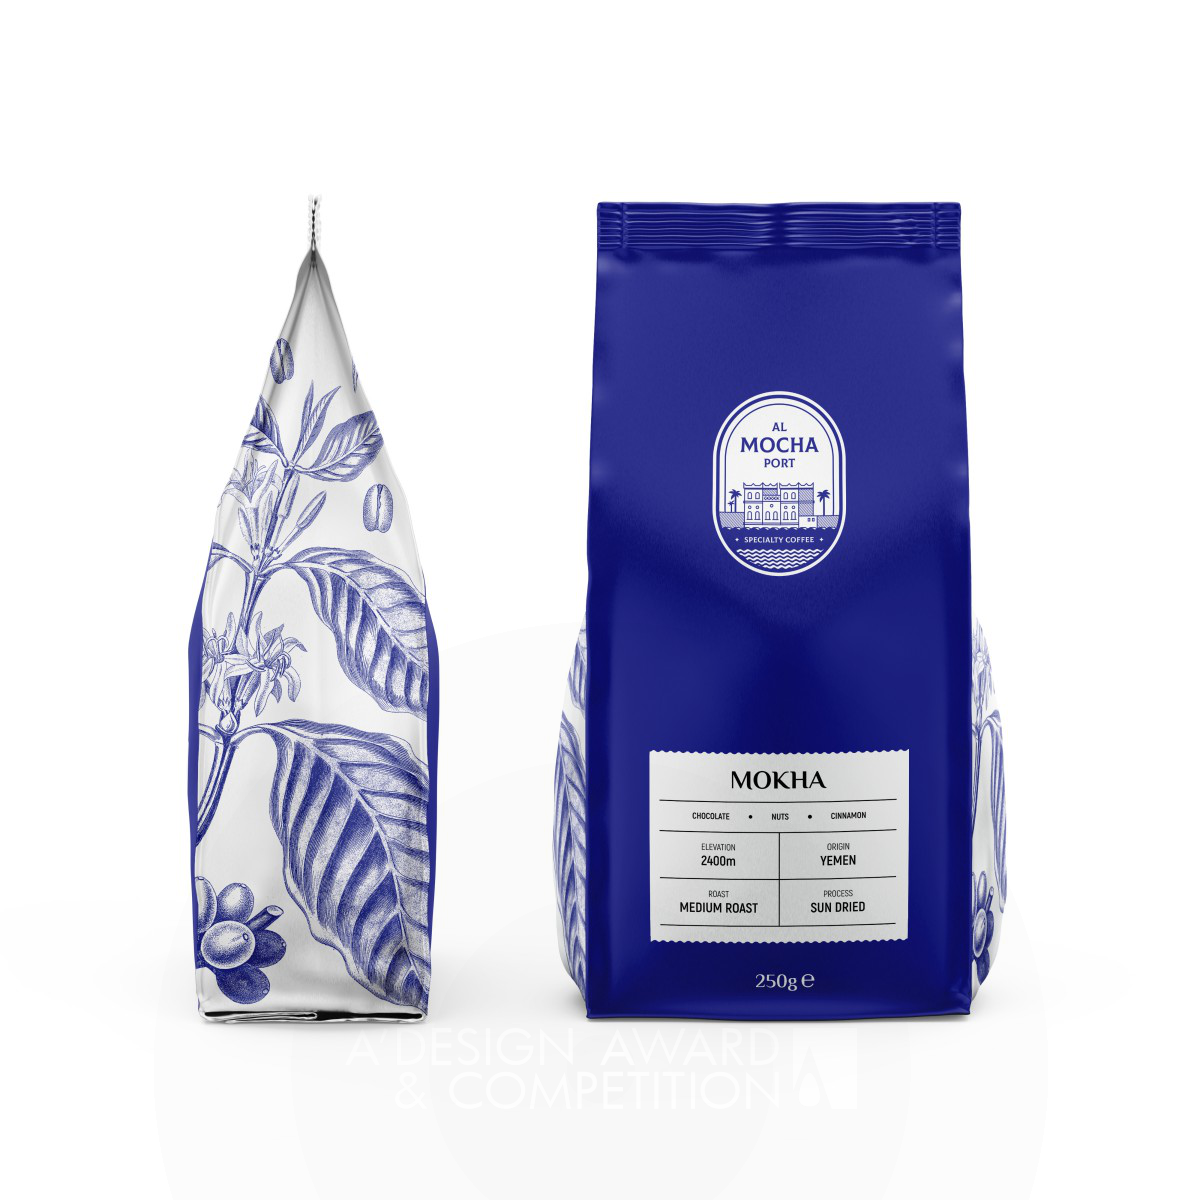 Al Mocha Port Coffee Packaging by Elena Gamalova Silver Packaging Design Award Winner 2022 